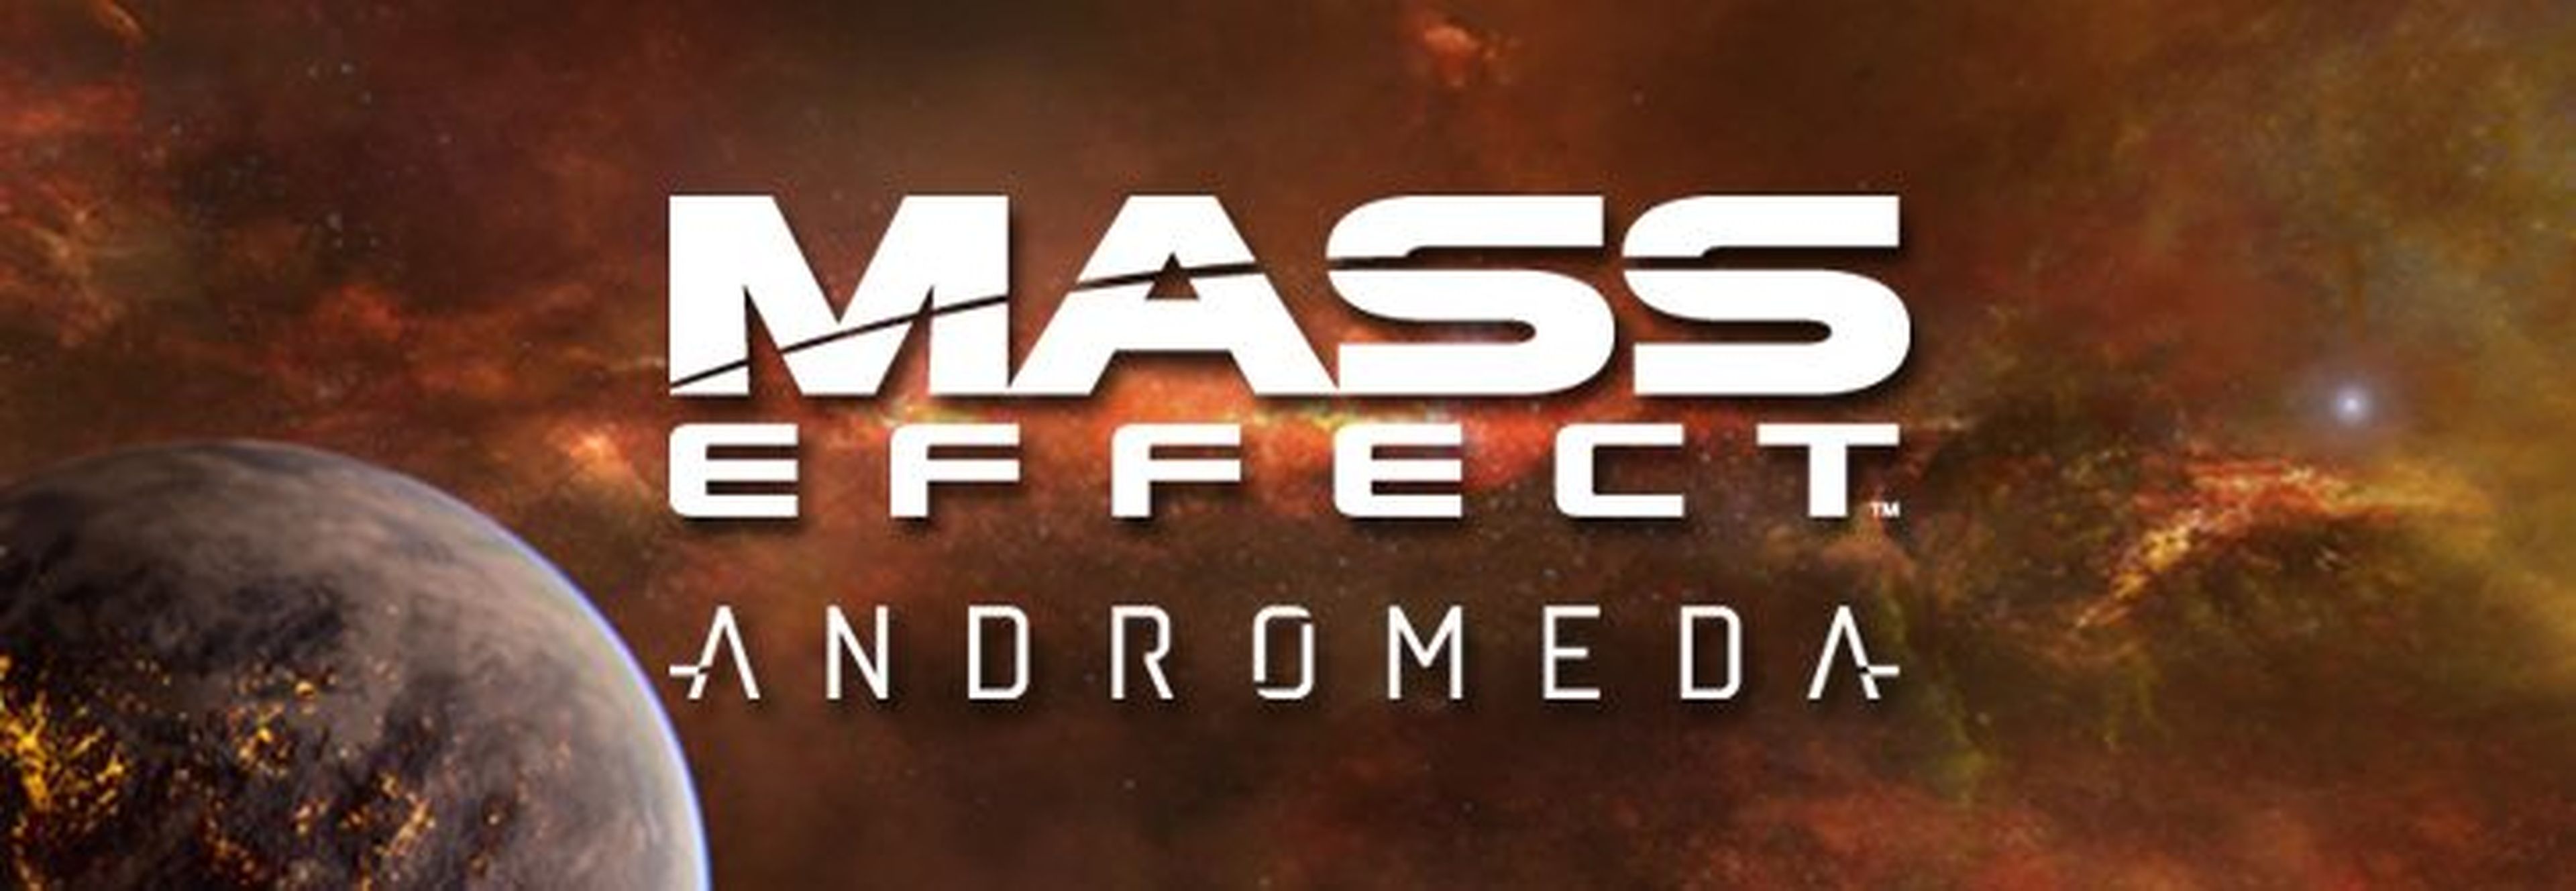 Mass Effect Andromeda saldrá a la venta a principios de 2017